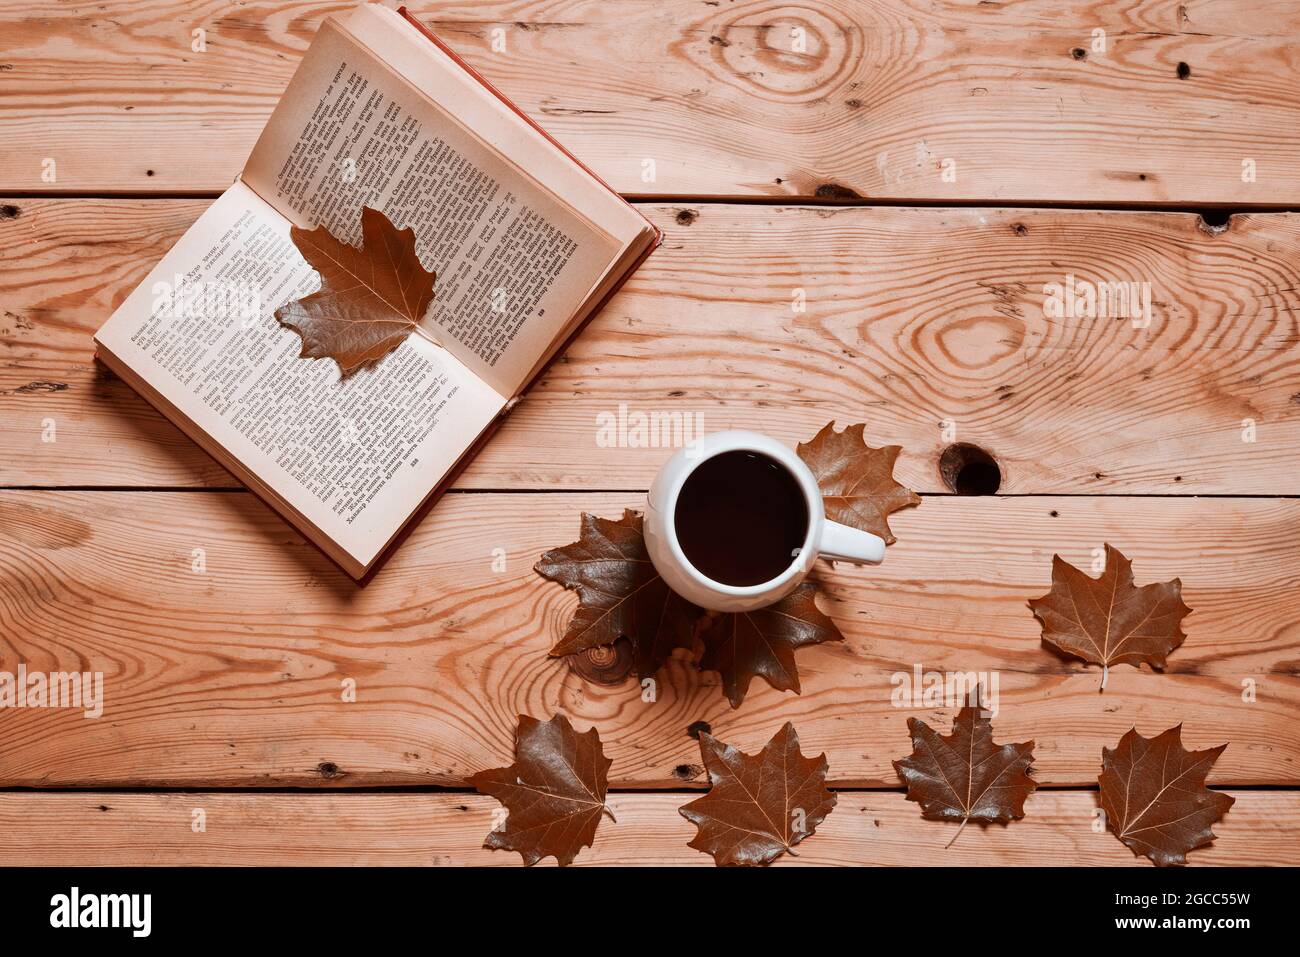 Lesen eines Buches an einem gemütlichen Herbsttag. Kalter Herbstmorgen mit  einer Tasse Kaffee und einem Buch. Herbstwochenende, Freizeit, geistiger  Urlaub, Entspannung zu Hause Stockfotografie - Alamy